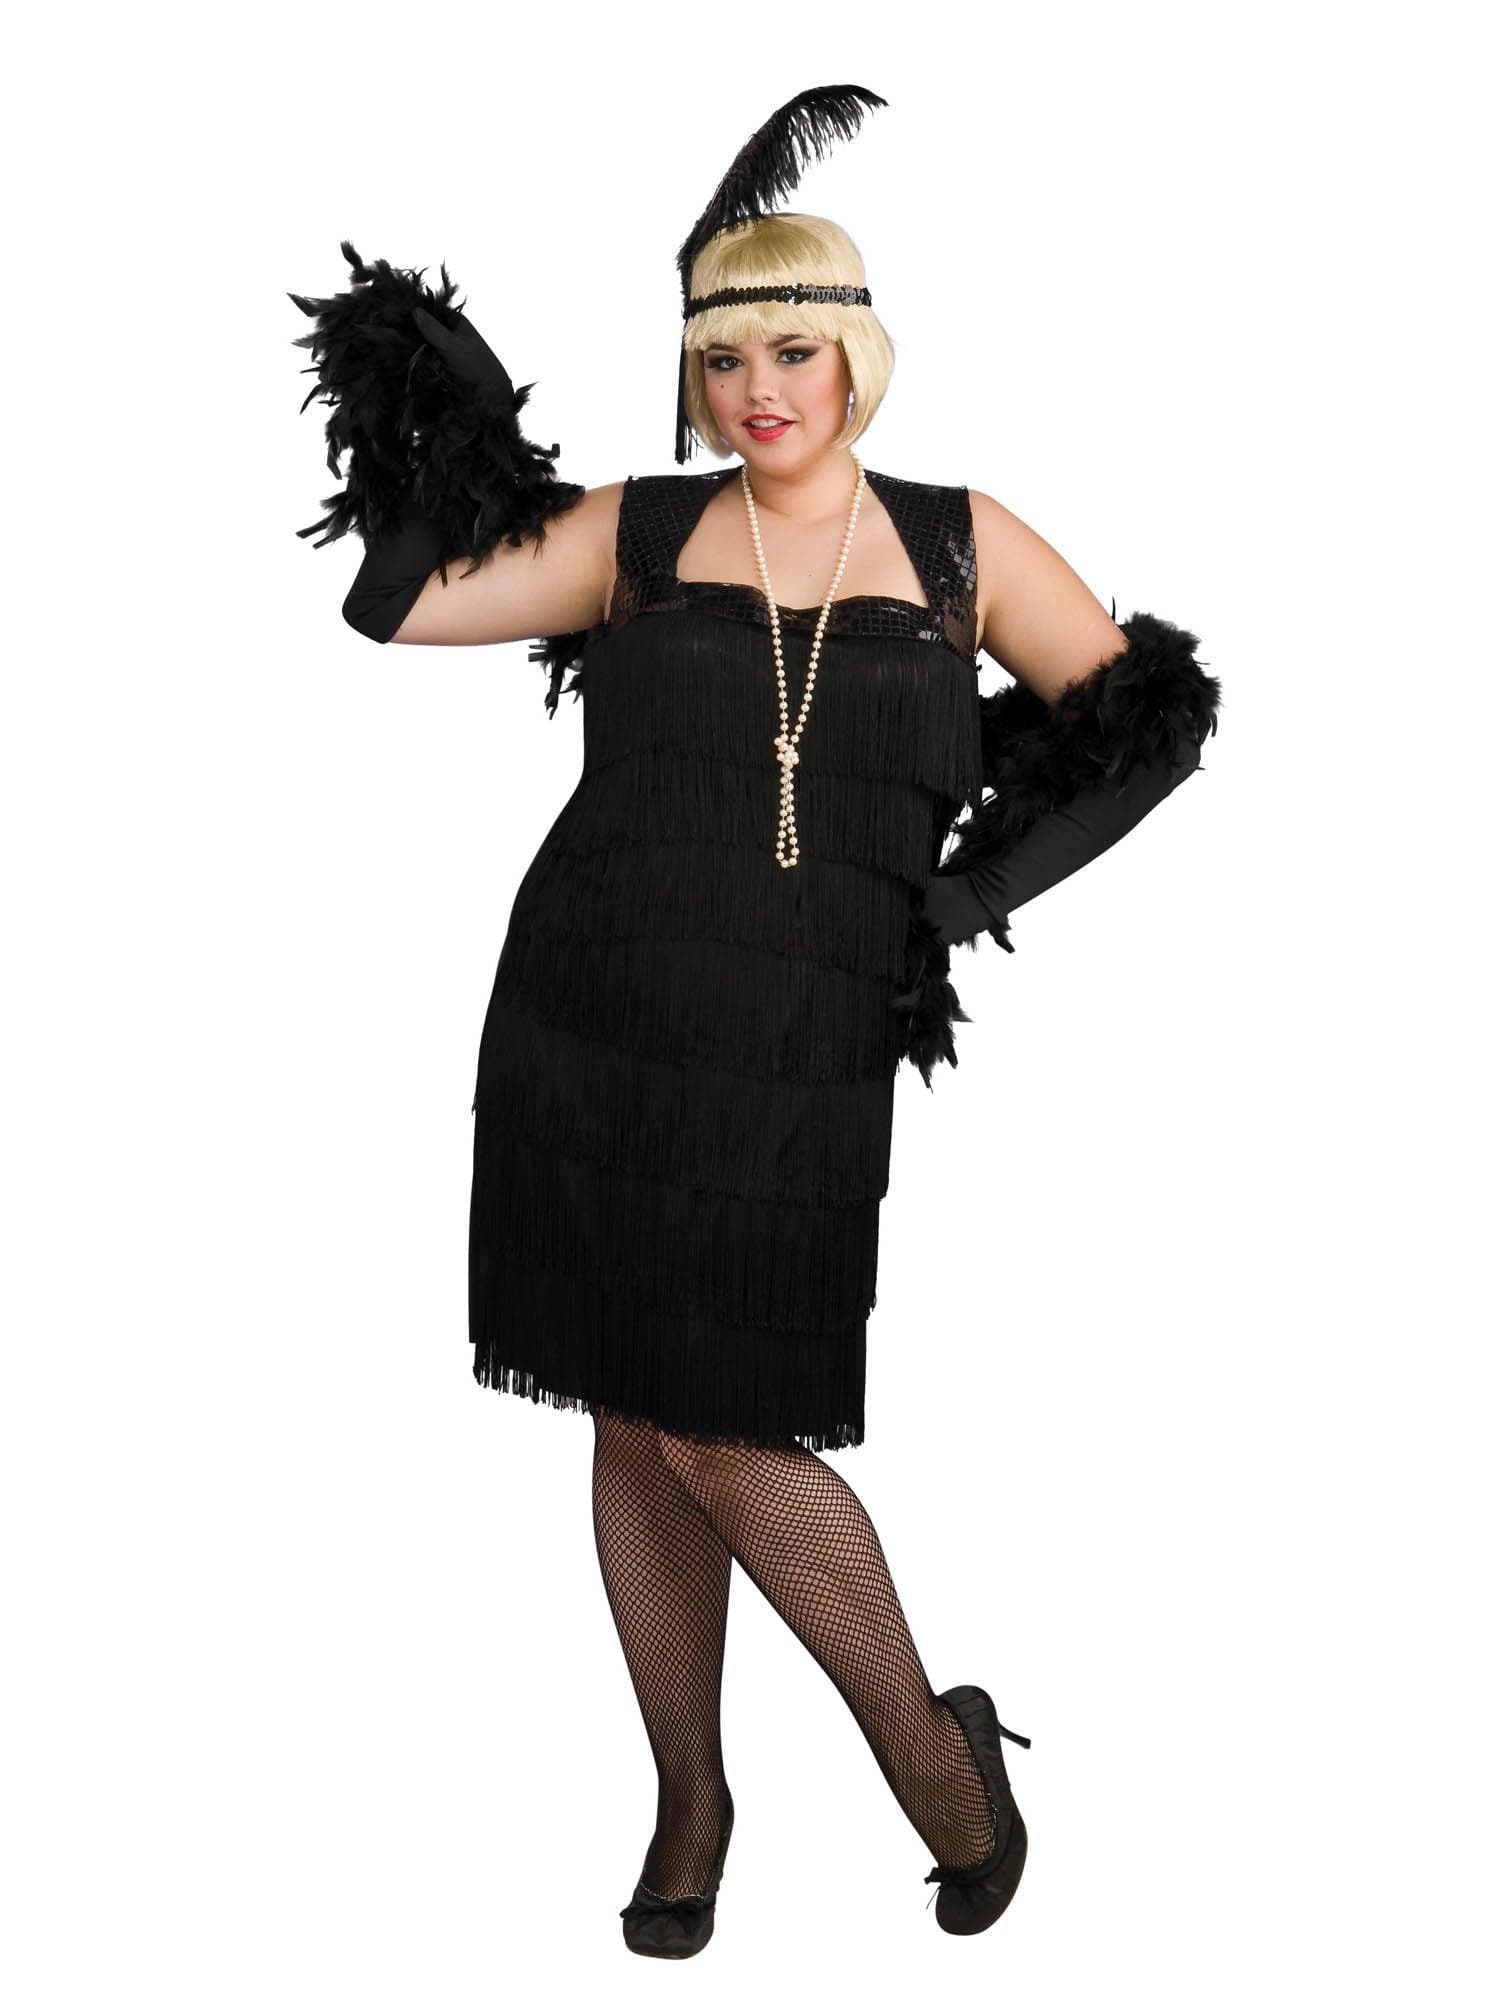 Adult Flapper Costume - costumes.com